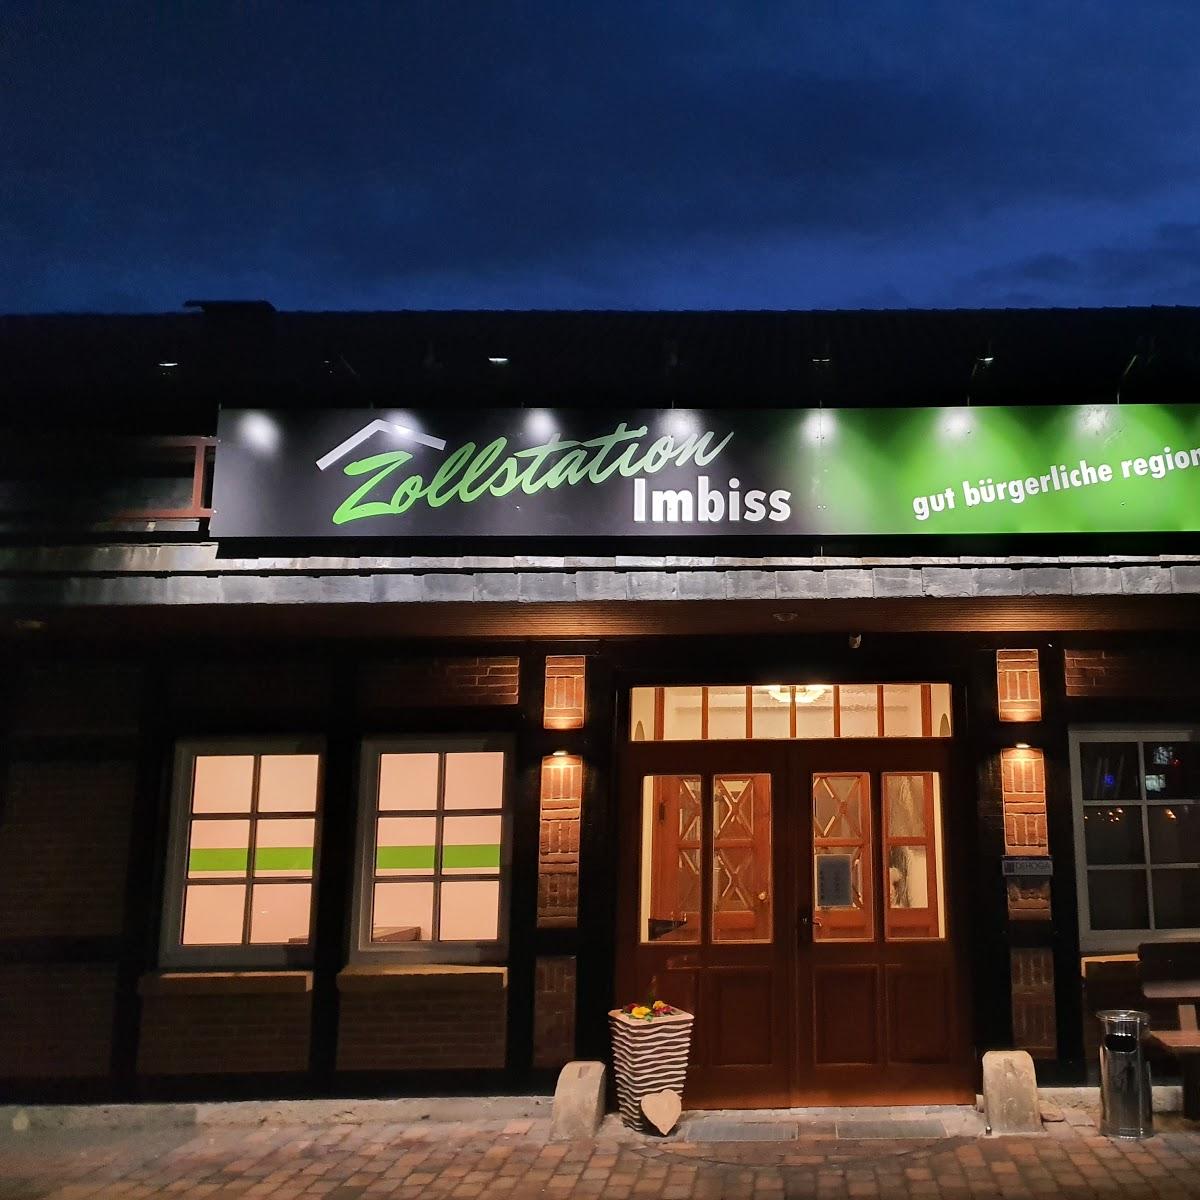 Restaurant "Zollstation Imbiss" in Wedemark